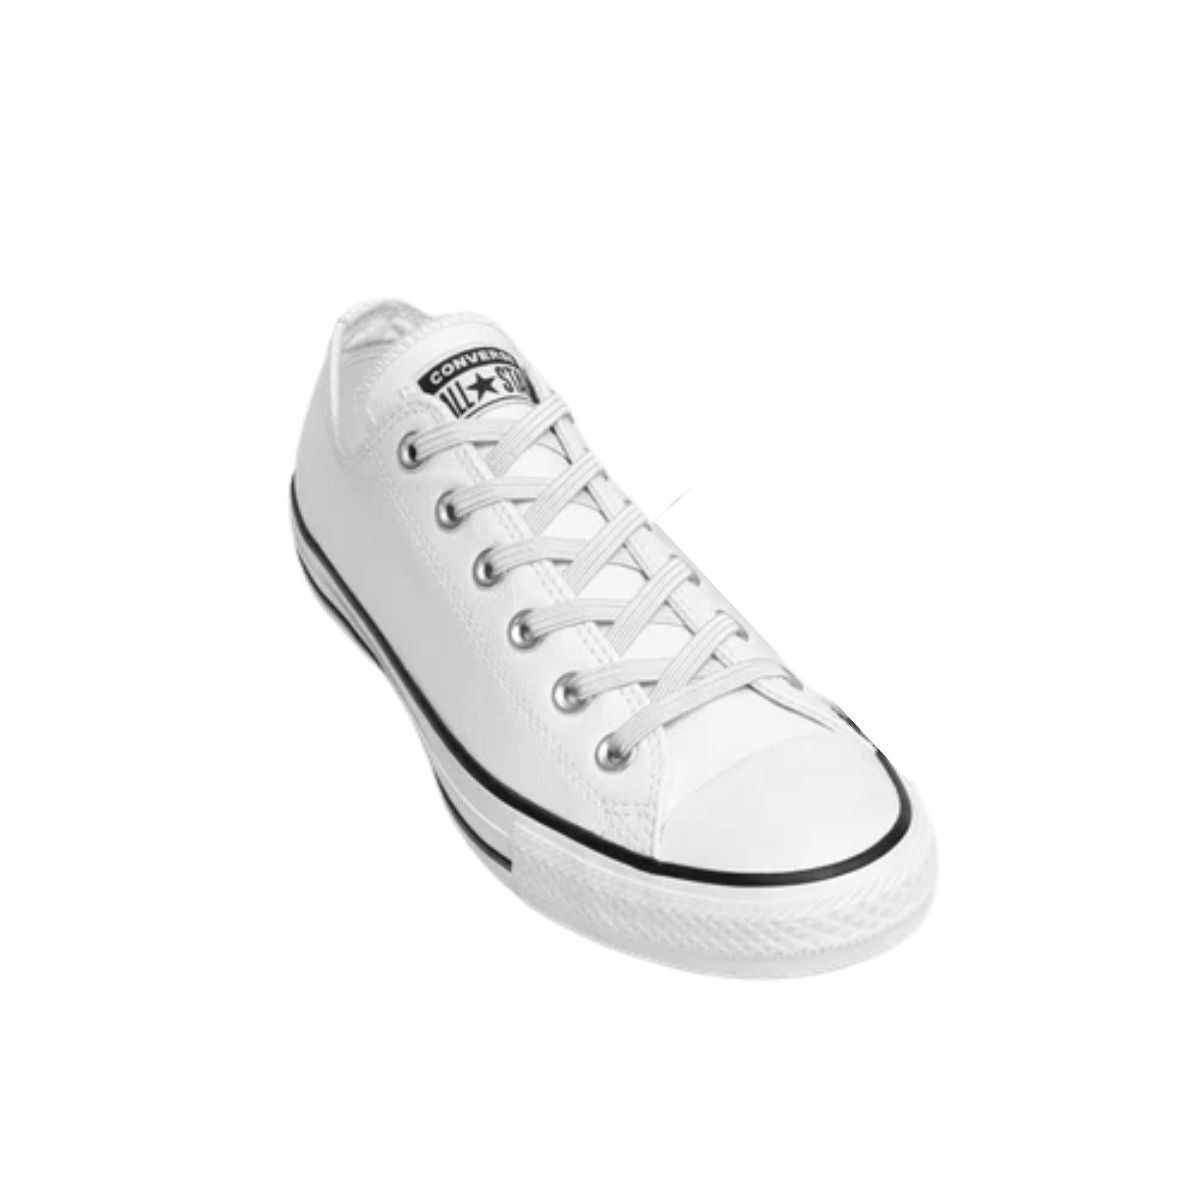 Replacement for Shoe Laces White No-Tie Shoelaces - Kicks Shoelaces